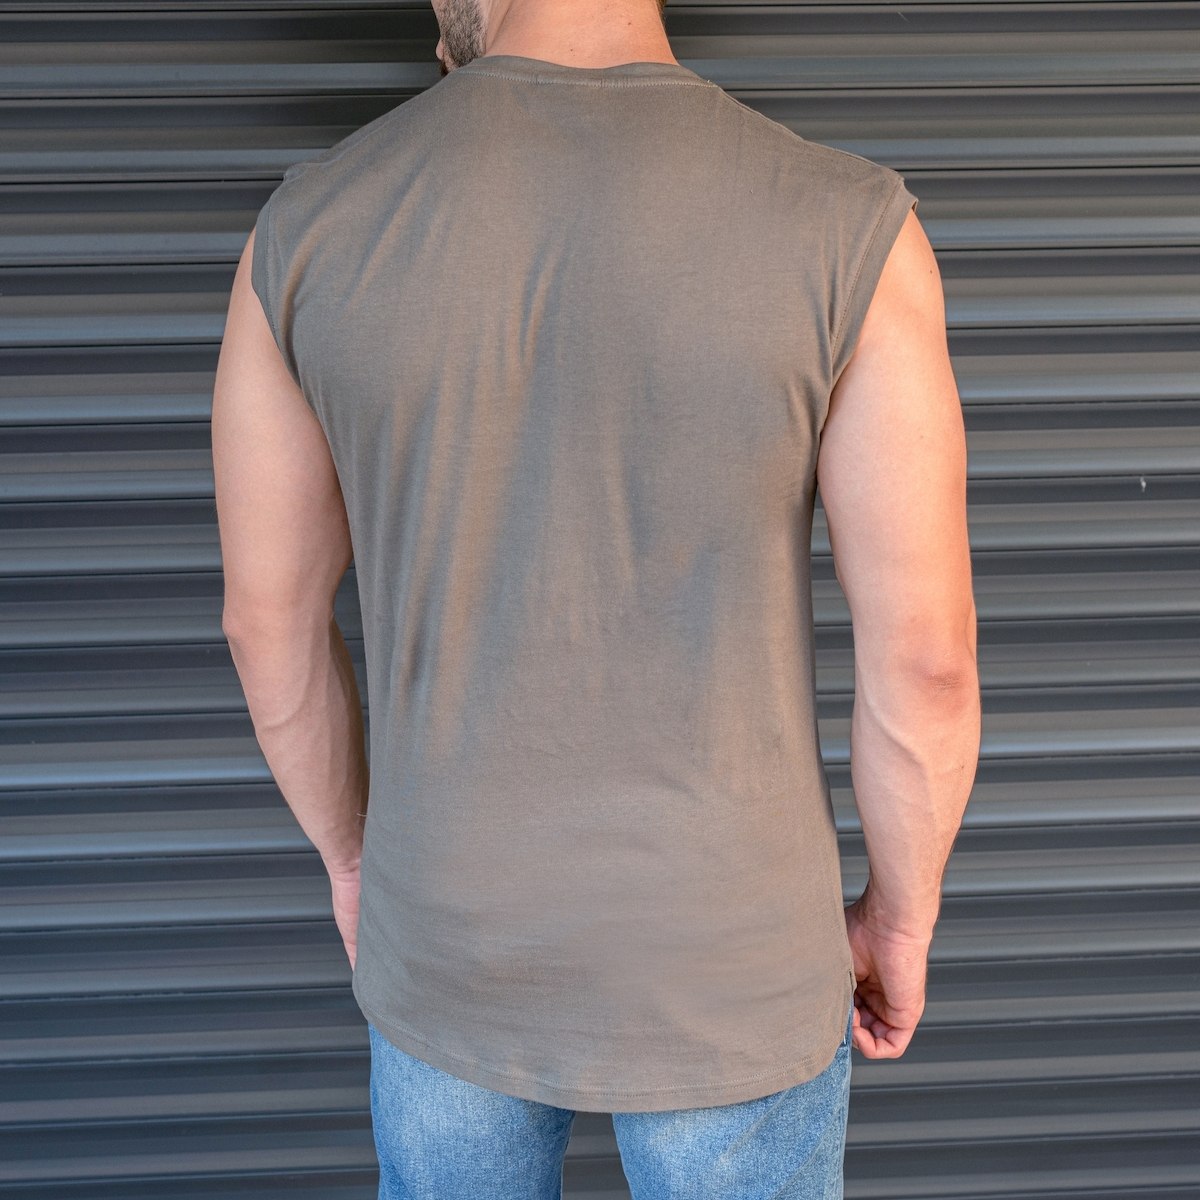 Men's Basic Sleeveless T-Shirt In Khaki